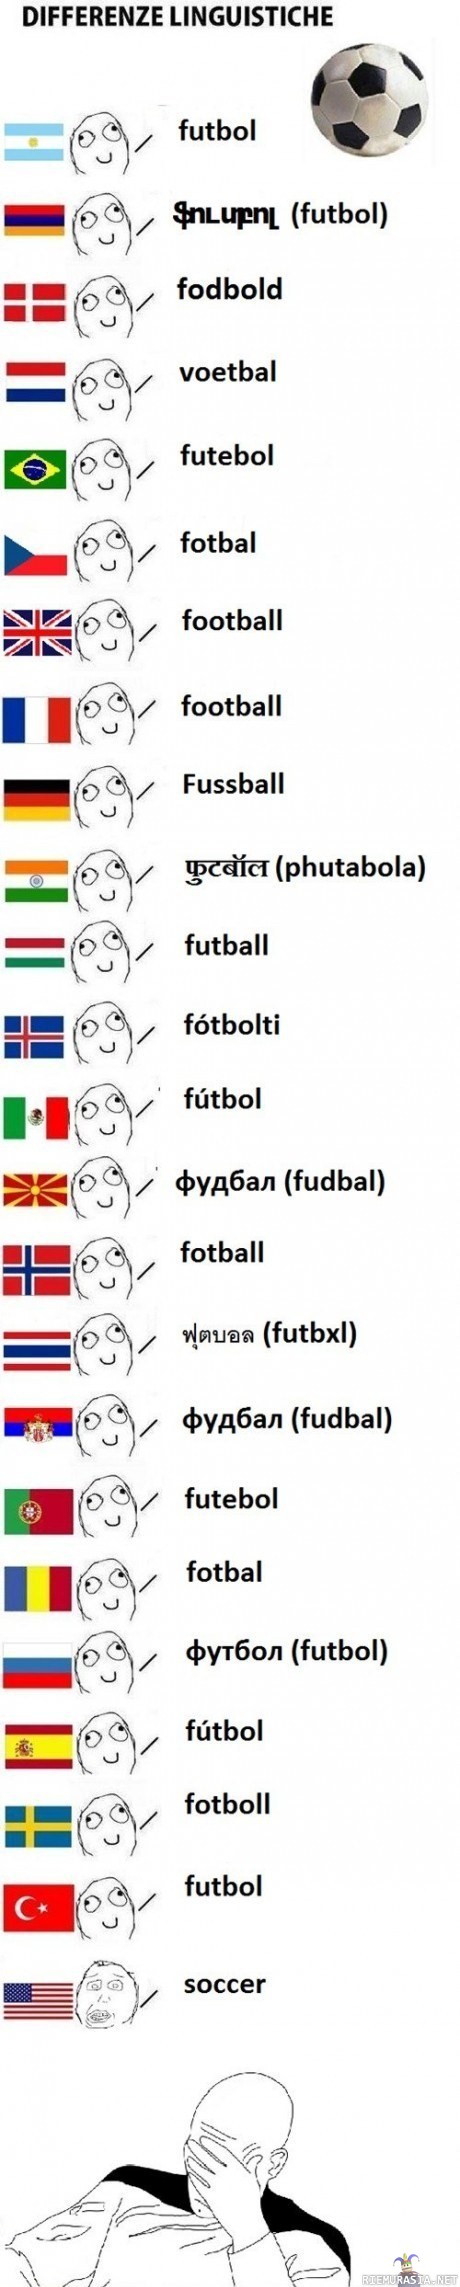 stupid americunts - sanoja jalkapallolle... toisaalta suomalainen sana ei ole lähelläkään footballia, mutta jalka=foot, pallo=ball... joten samassa veneessä ollaan muiden maiden kanssa... kai